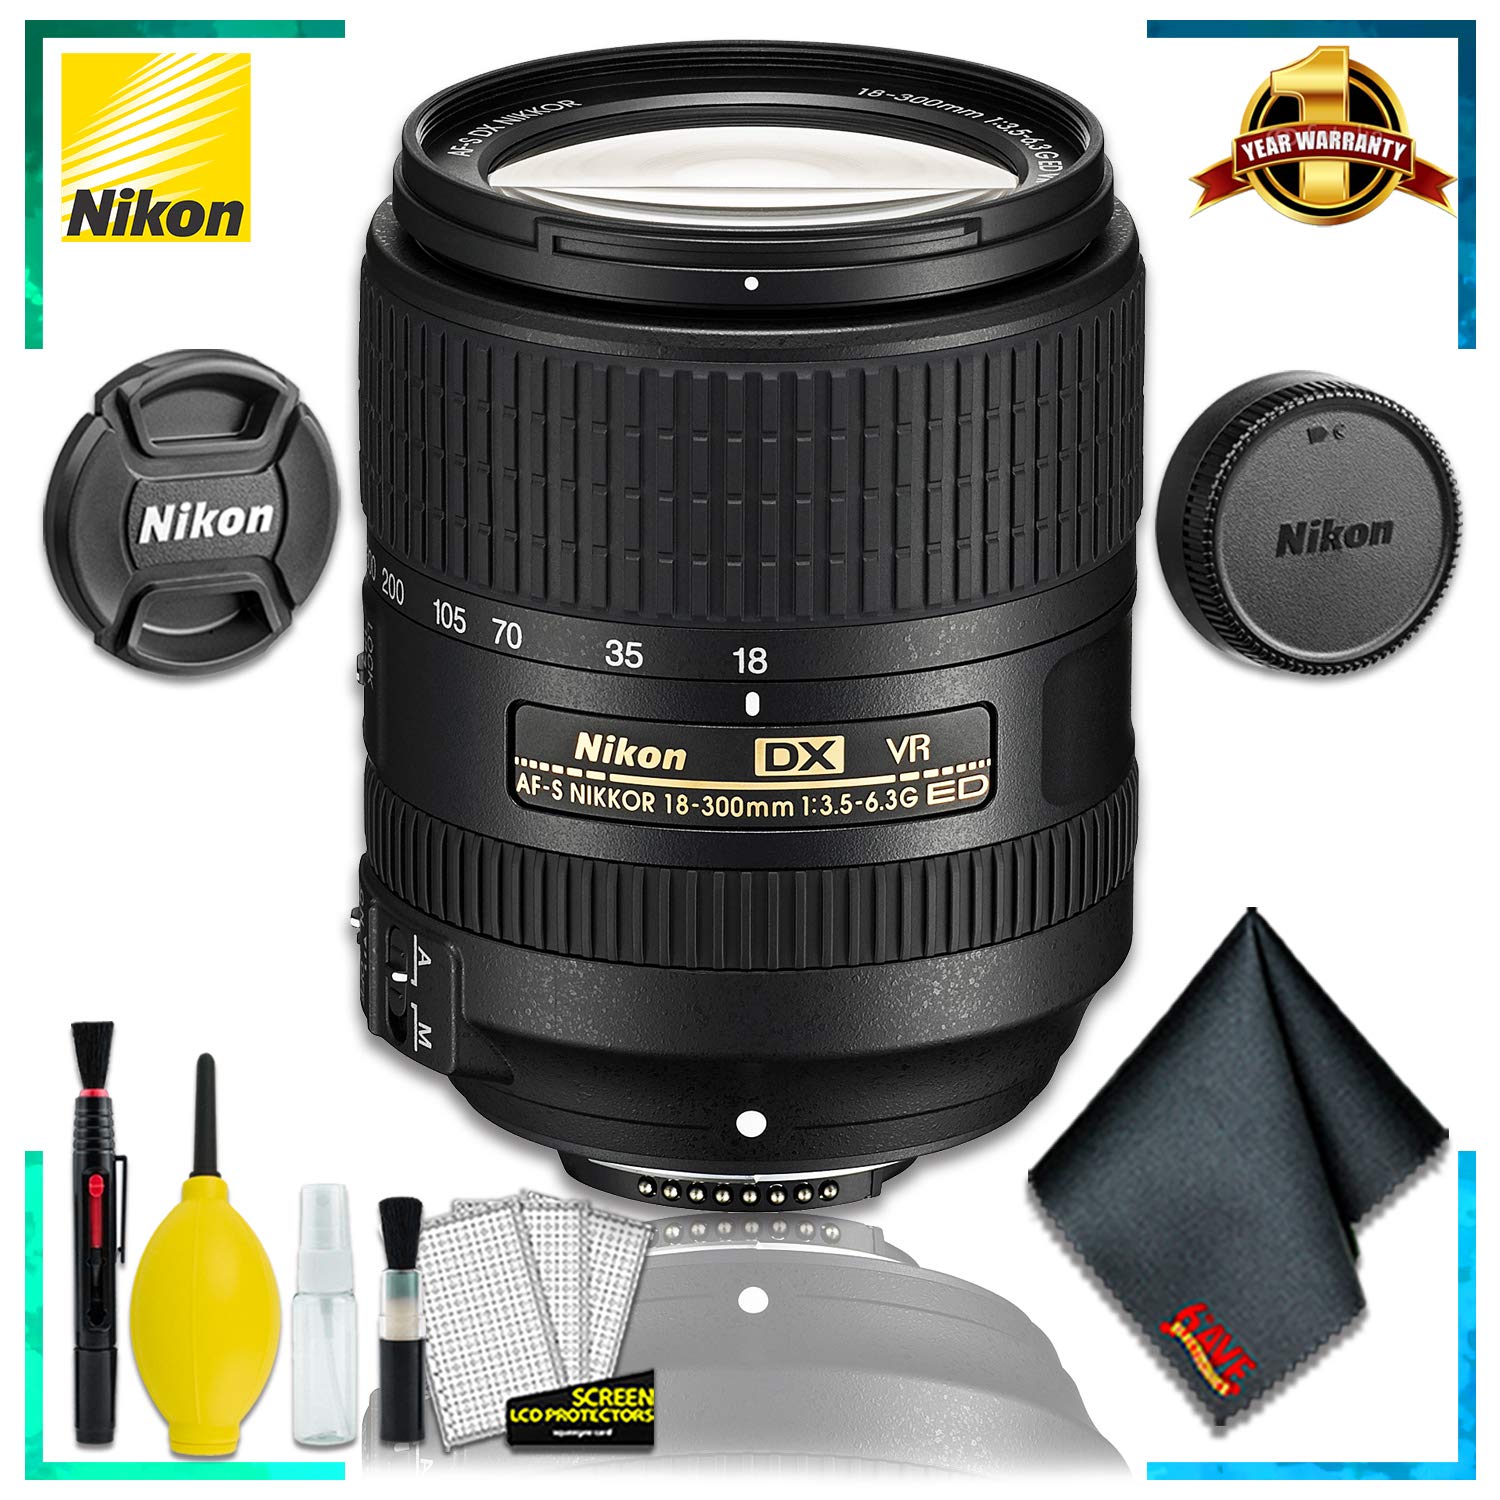 Nikon AF-S DX VR Nikkor 18-300MM Lens (Intl Model) + Cleaning Kit